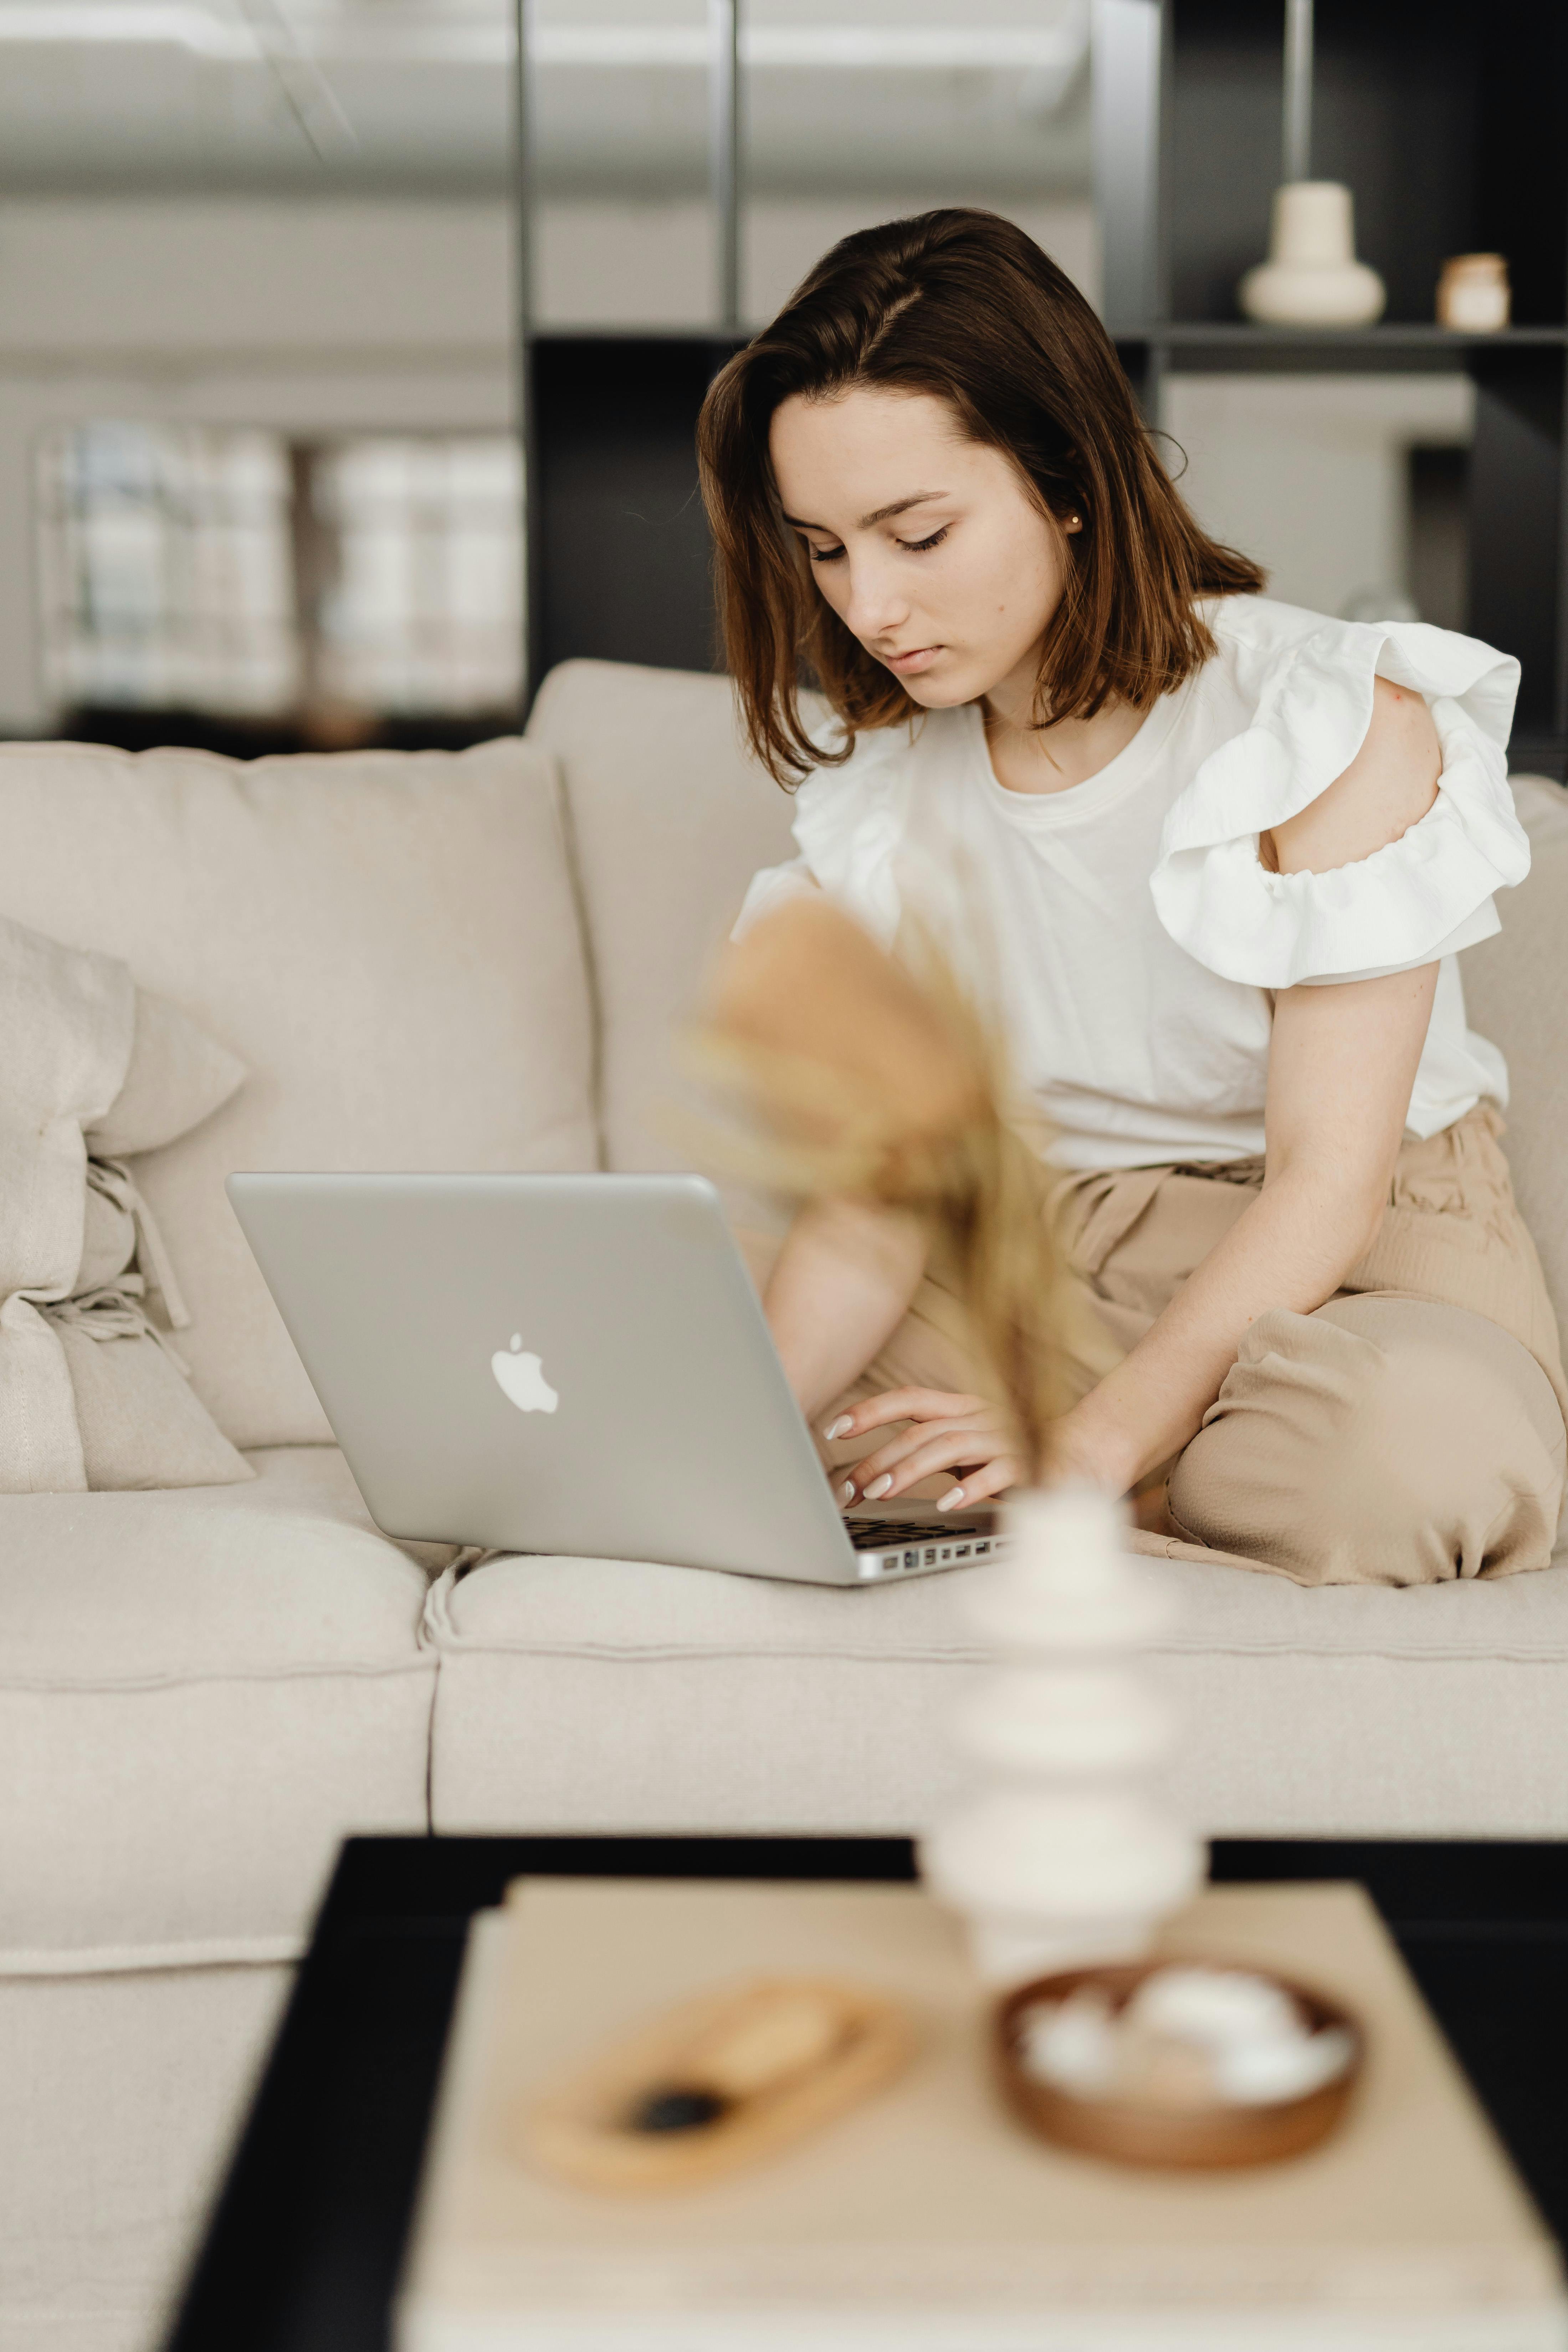 Eine Frau auf der Couch, die auf einem Macbook tippt | Quelle: Pexels